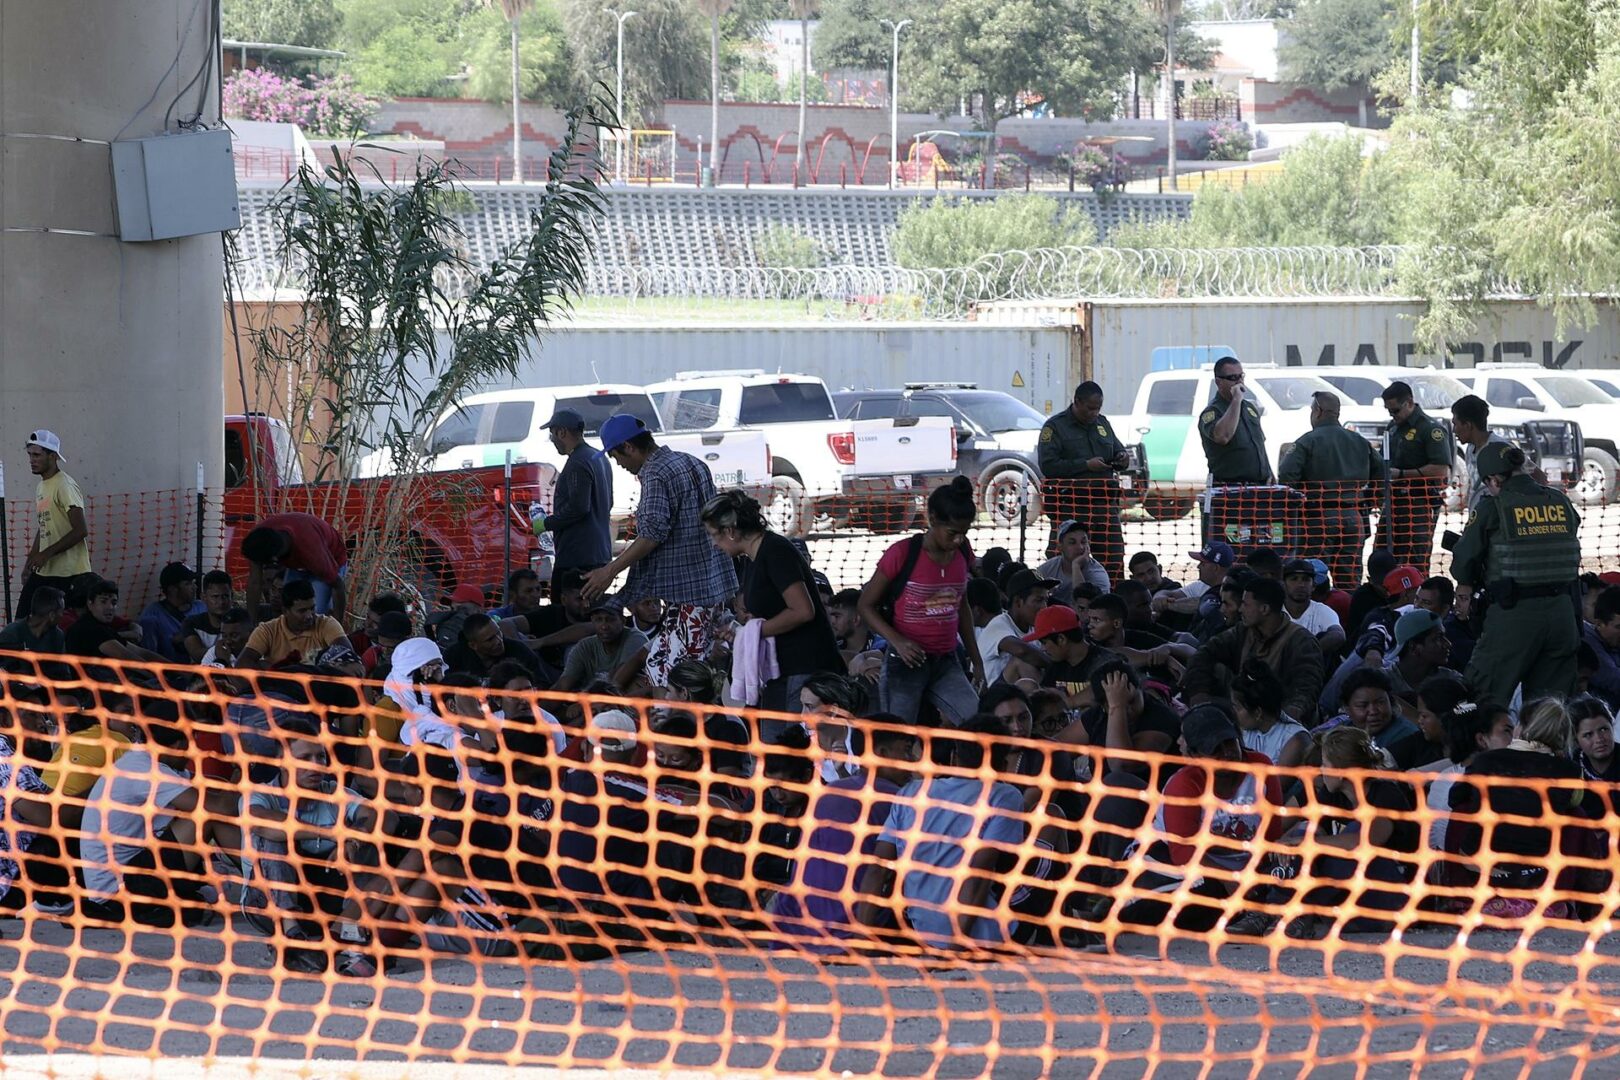 Frontera de Texas registra nueva ola masiva de migrantes y muerte de dos, incluido un niño